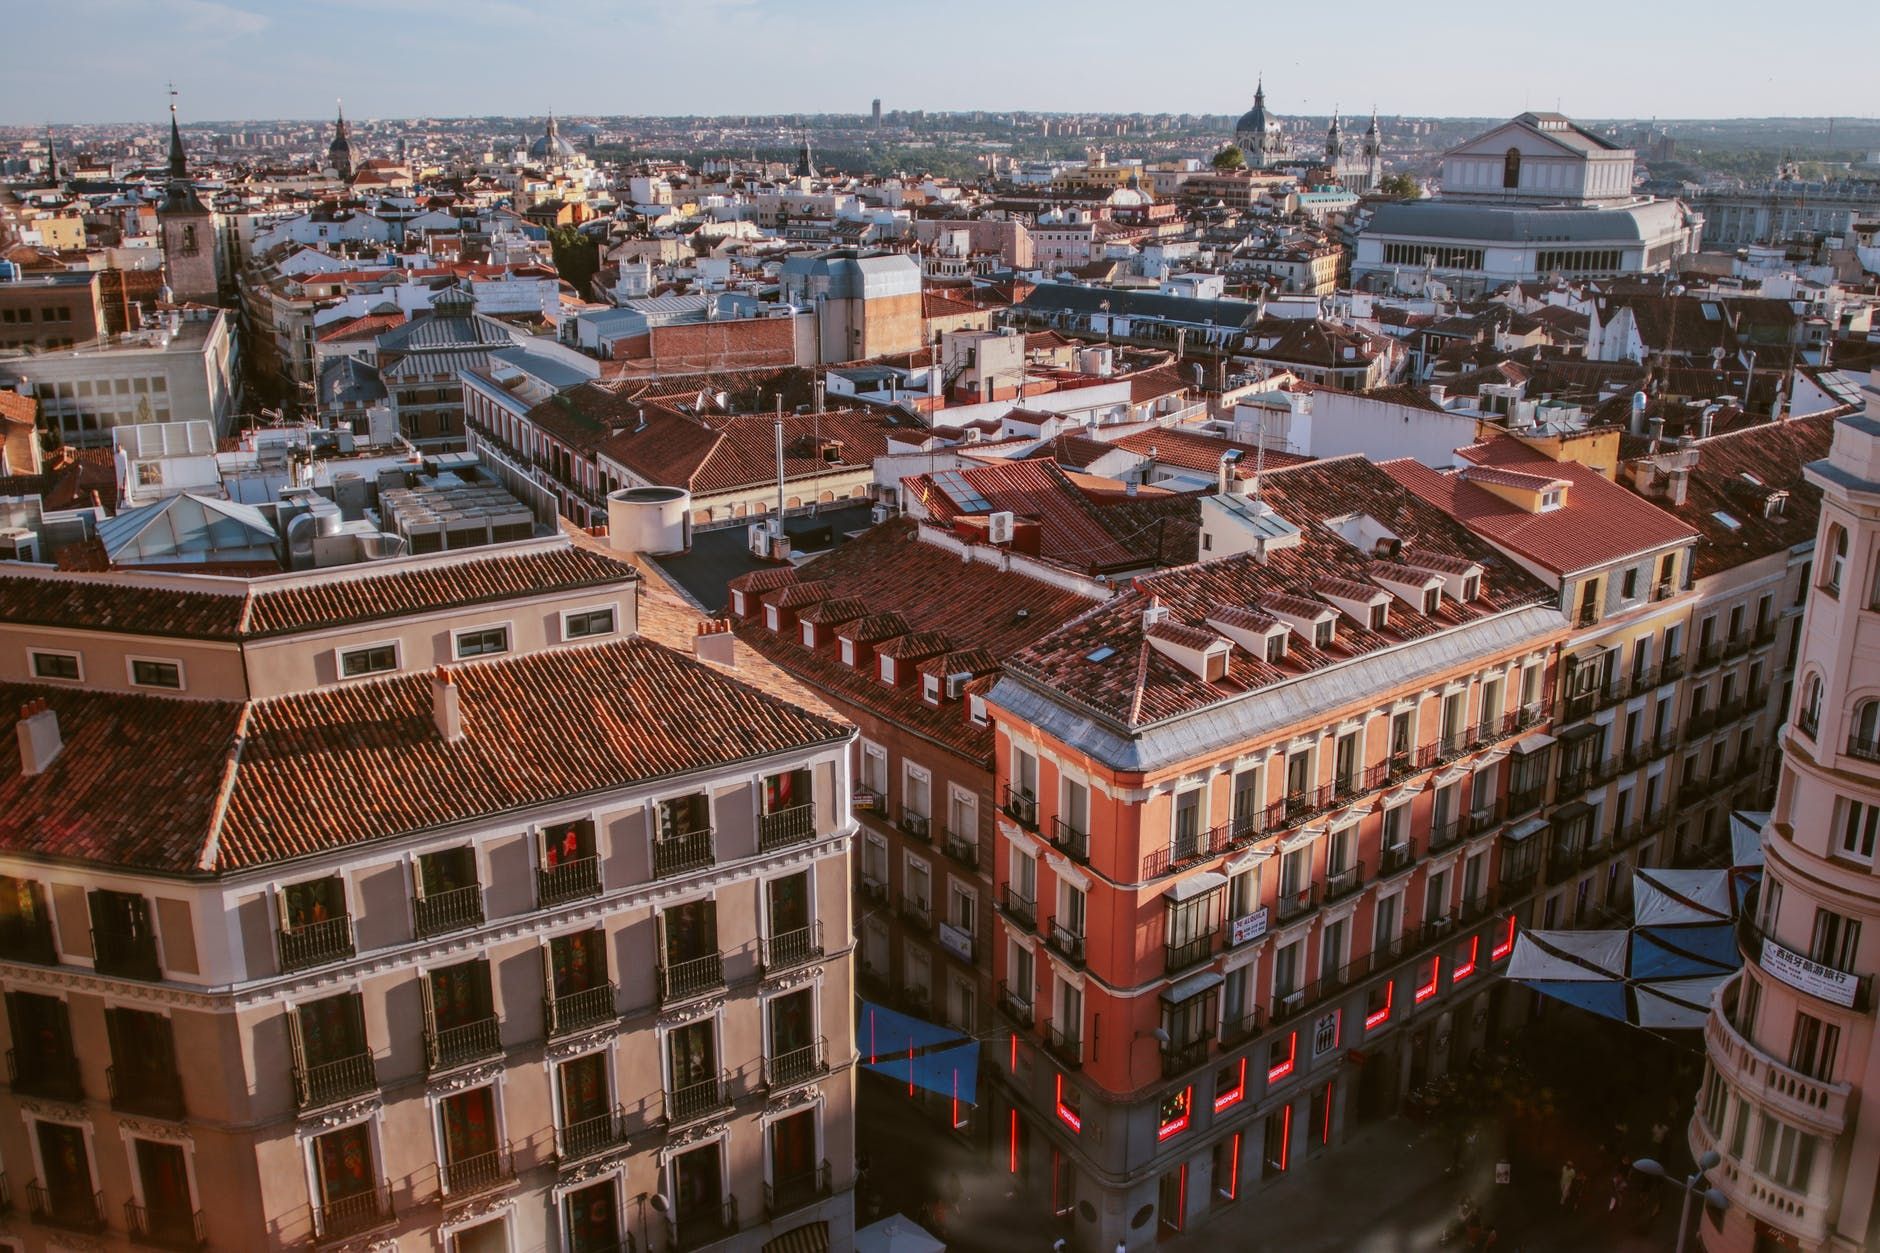 Іспанія планує виплачувати 300 доларів повнолітнім, які переїжджають з батьківського дому - Нерухомість